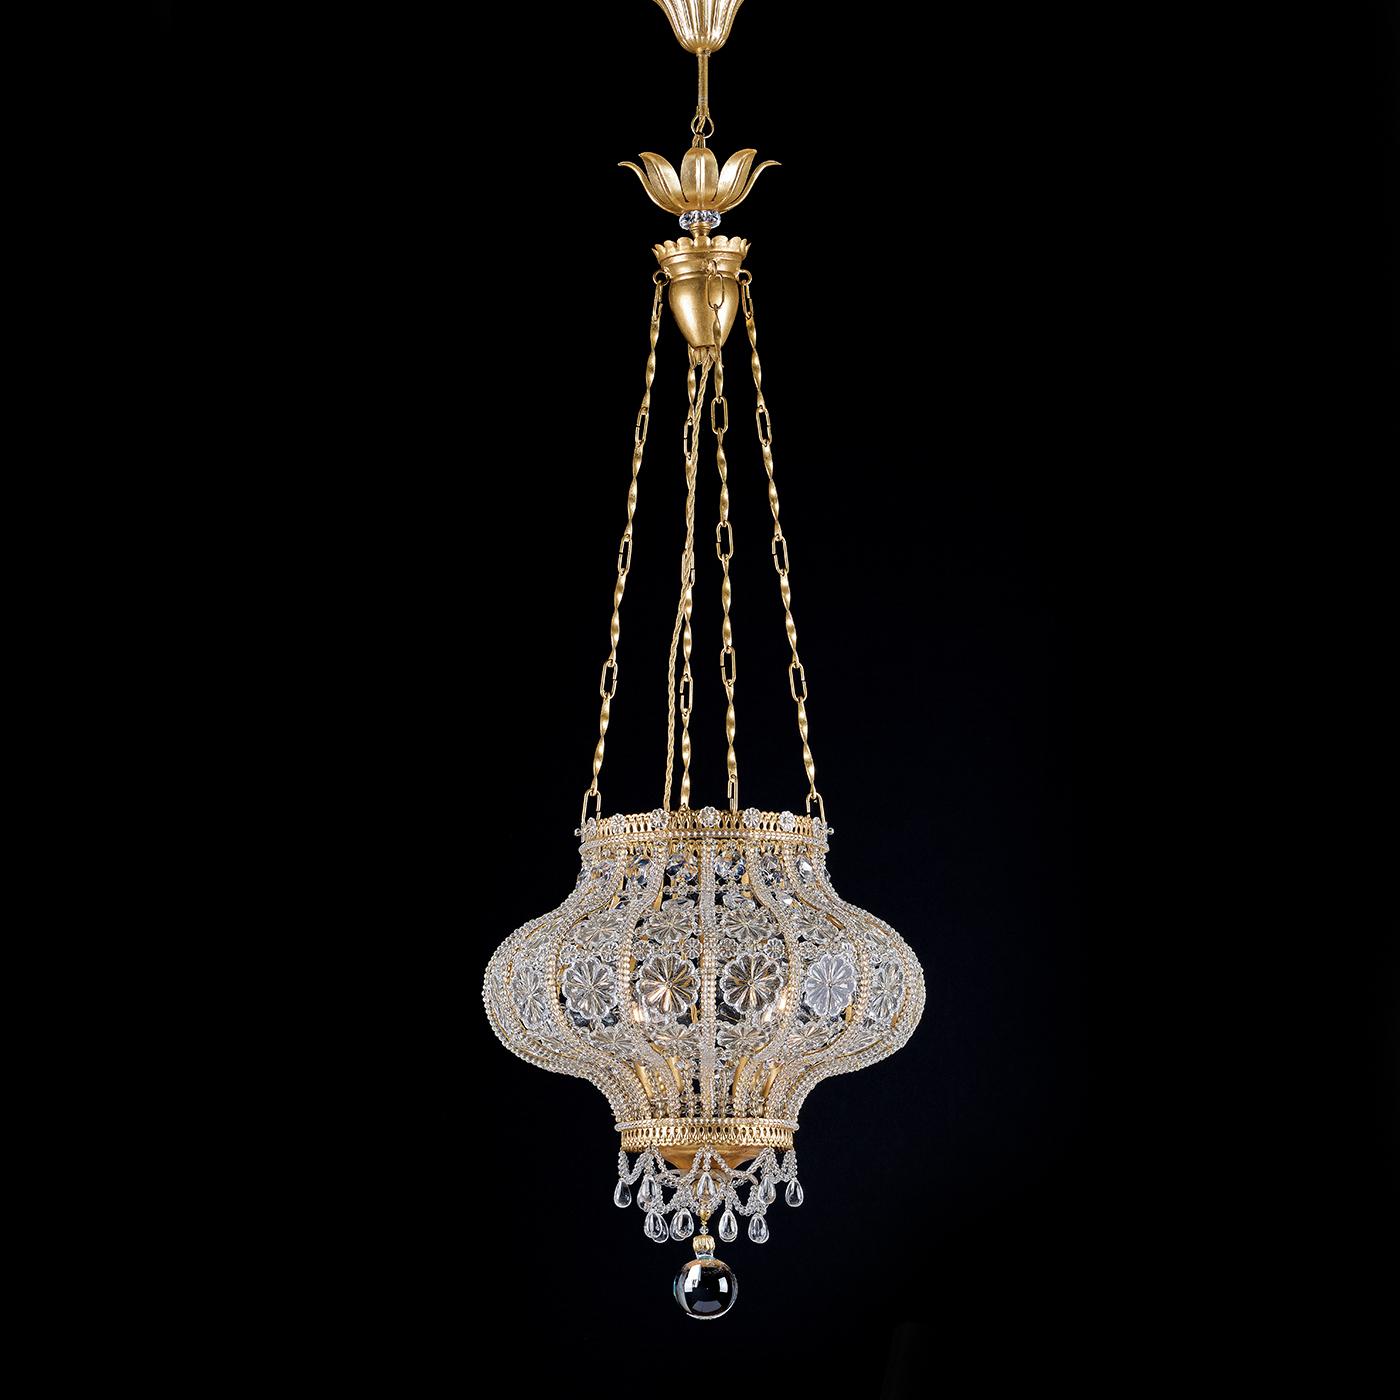 Dieser handgefertigte Anhänger von Epoca Lampadari ist ein beeindruckendes Beispiel für italienische Handwerkskunst. Die vom orientalischen Laternenstil inspirierte Hängeleuchte mit Glaskristallen und Blattgoldoptik ist eine charmante Ergänzung für